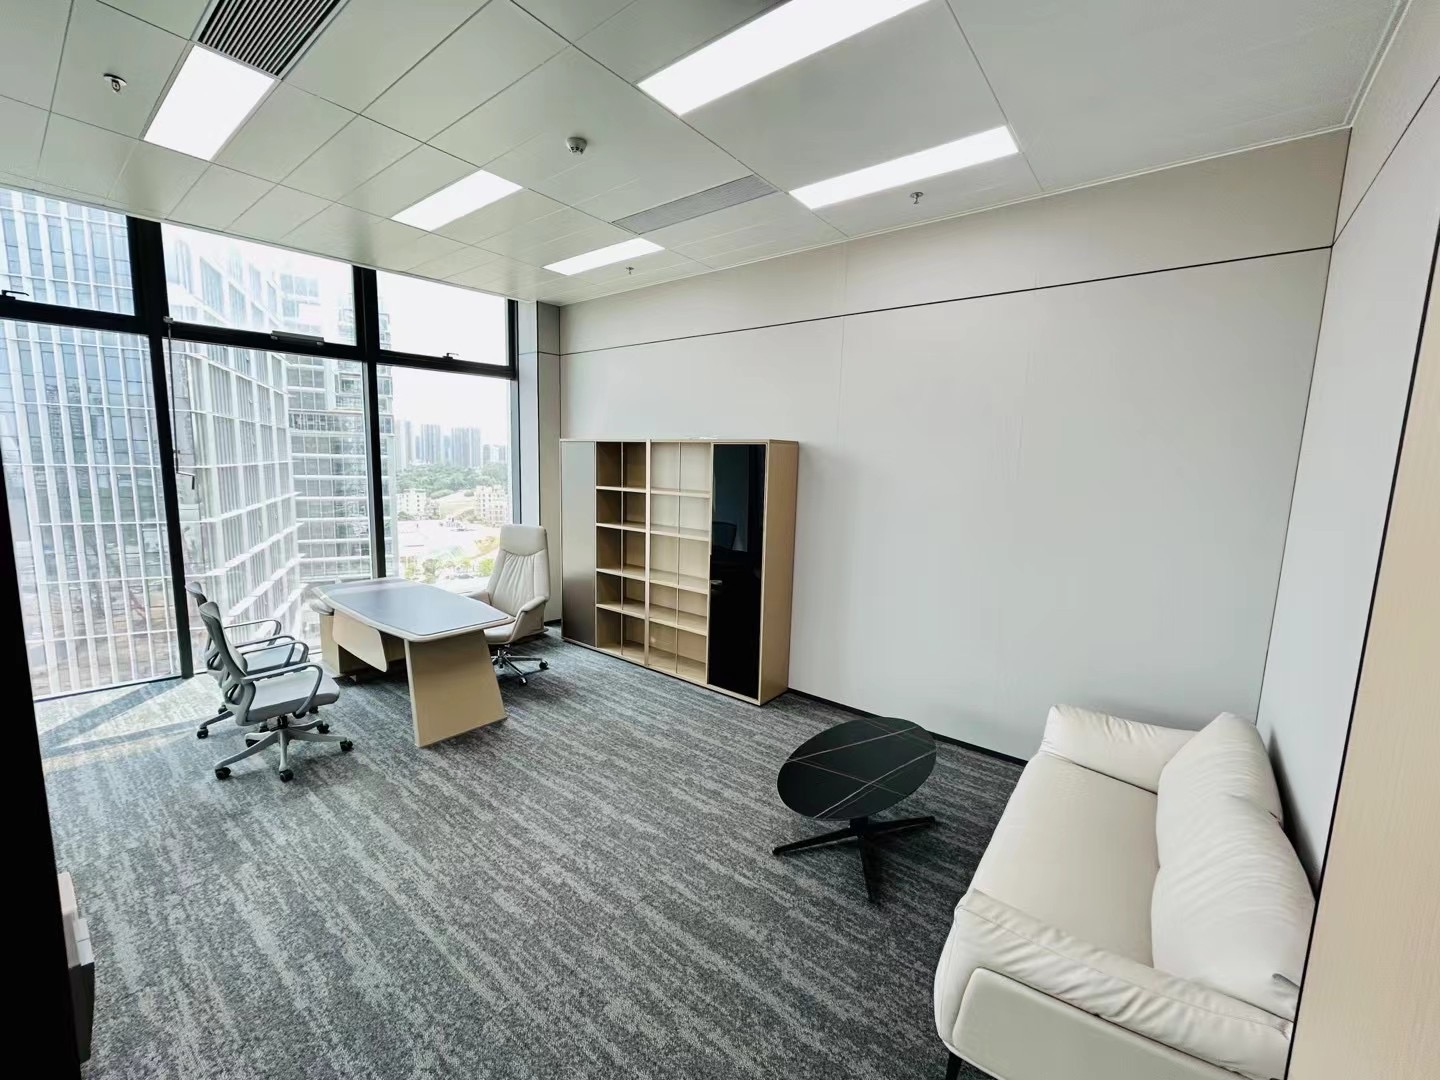 平湖金融基地楼上办公室80平方起租，精装办公室